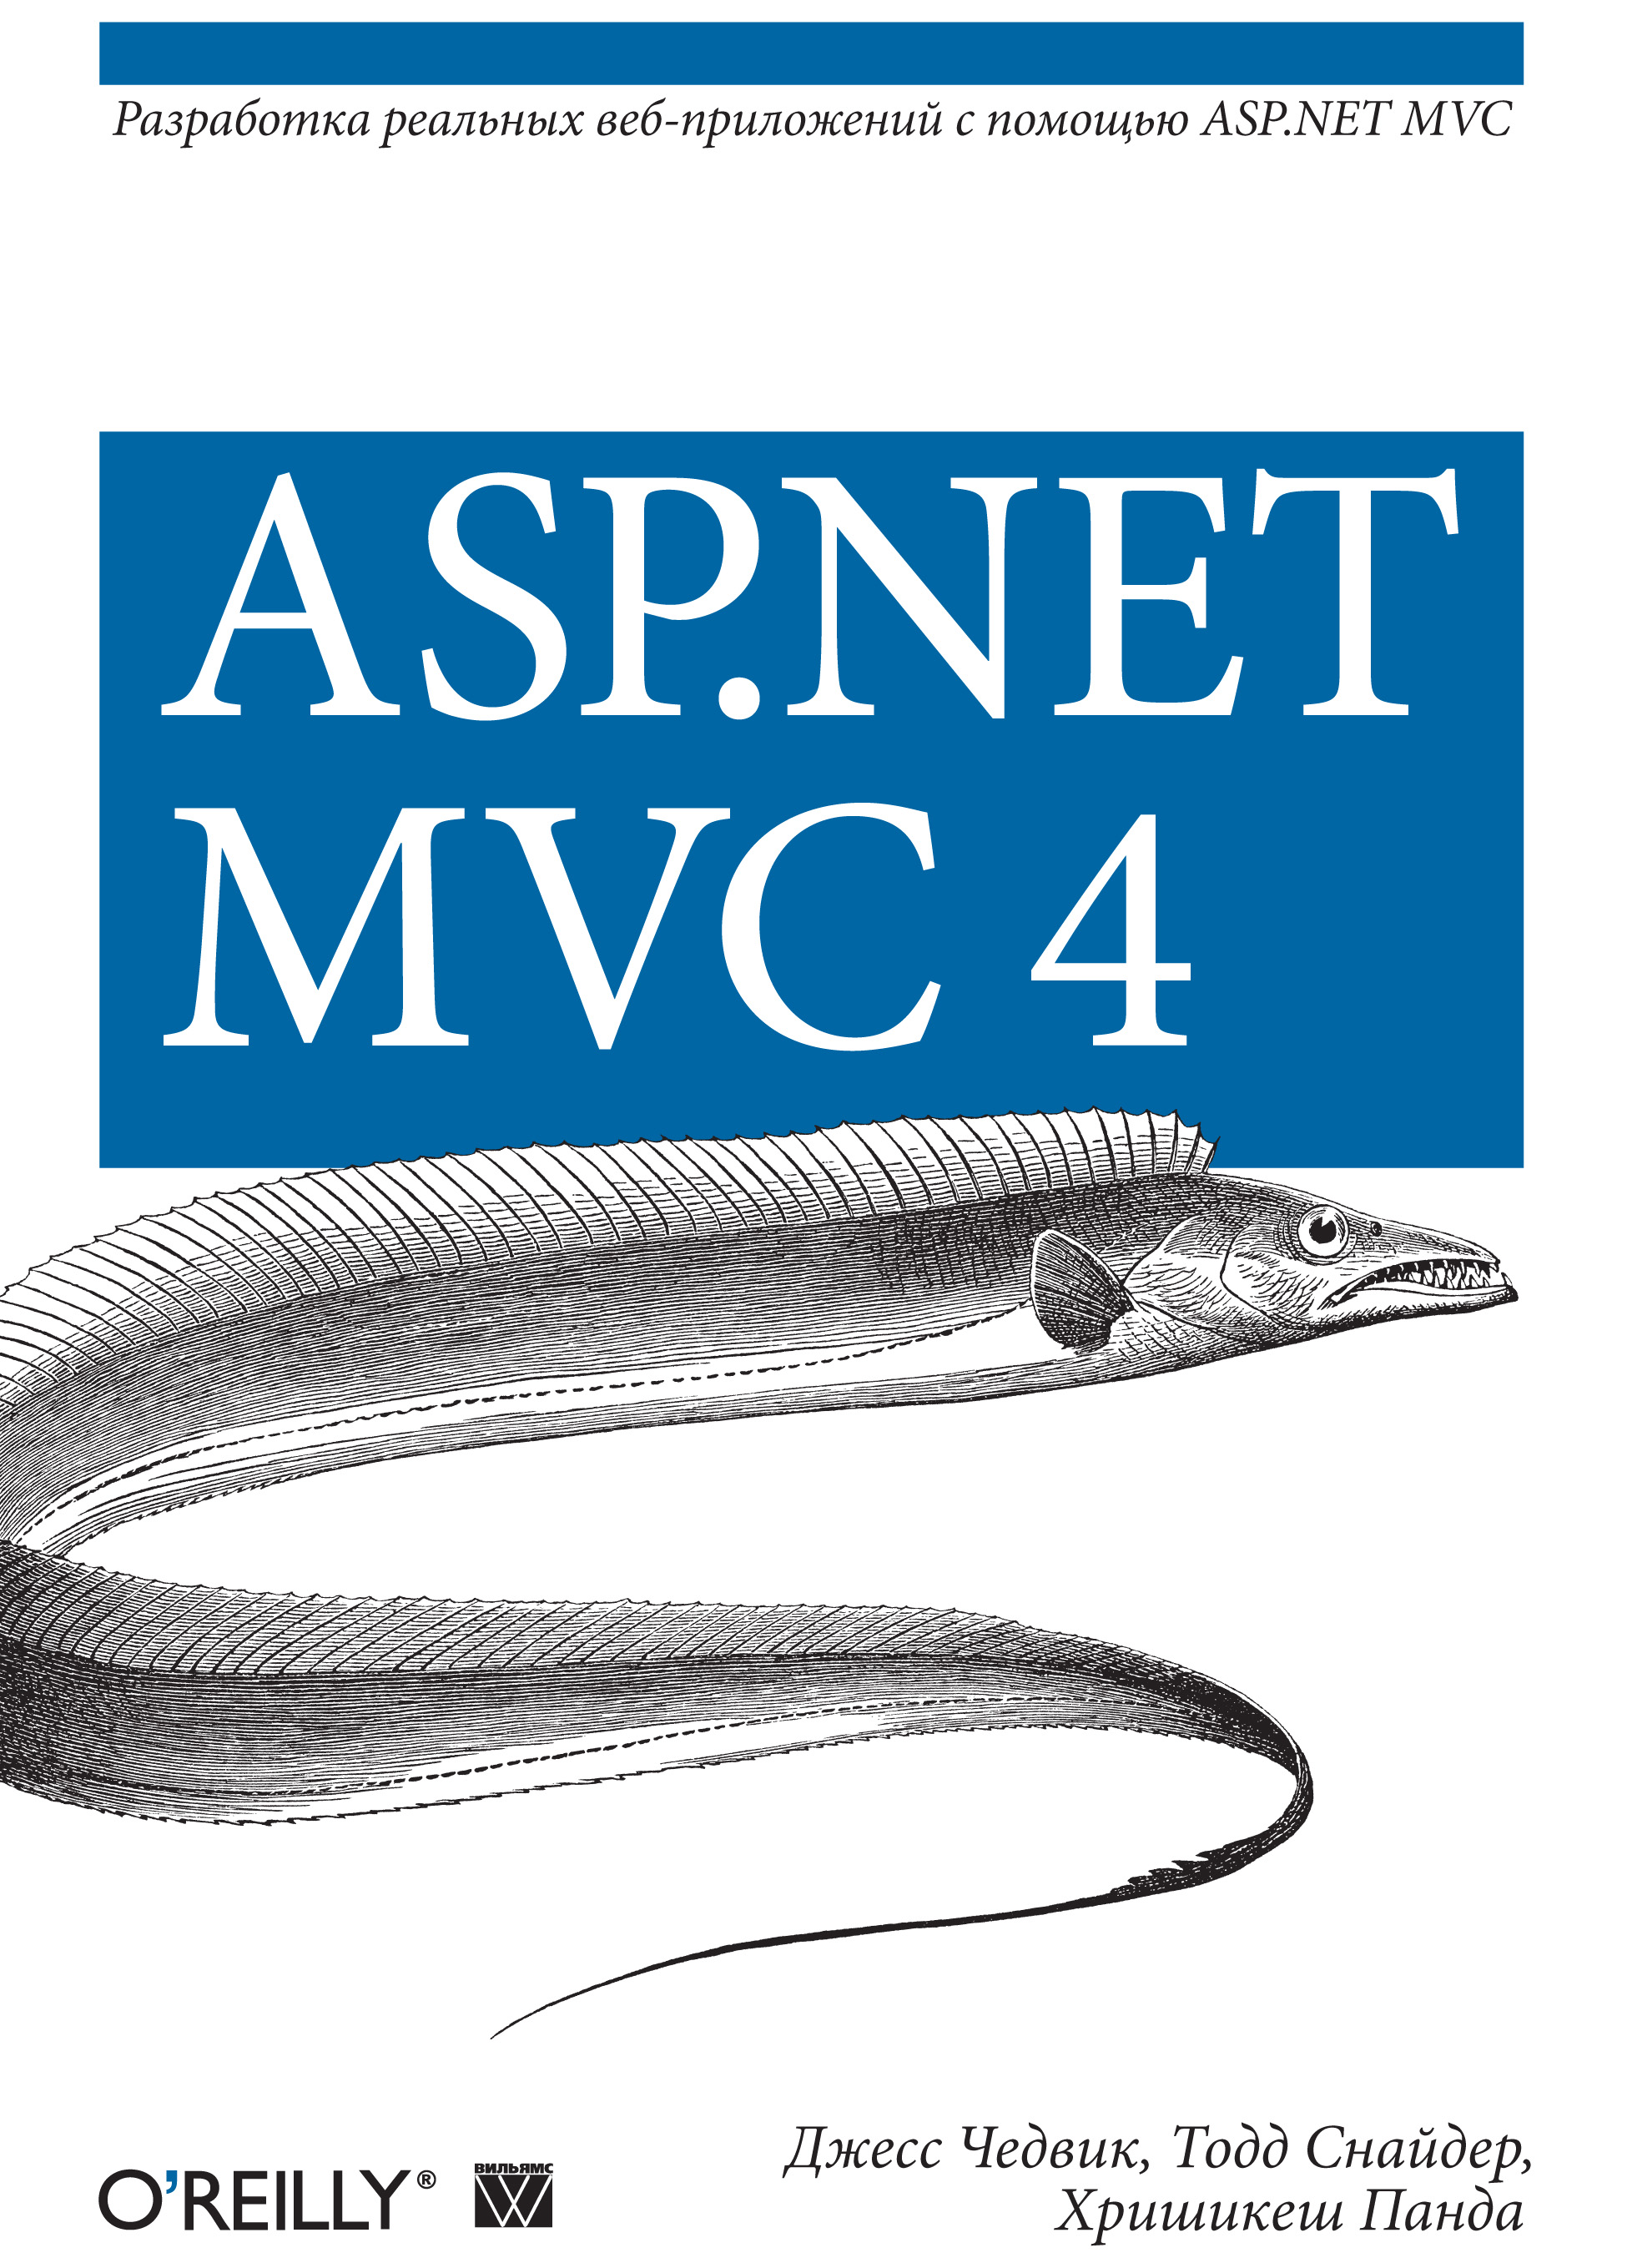 ASP.NET MVC 4.Разработка реальных веб-приложений с помощью ASP.NET MVC